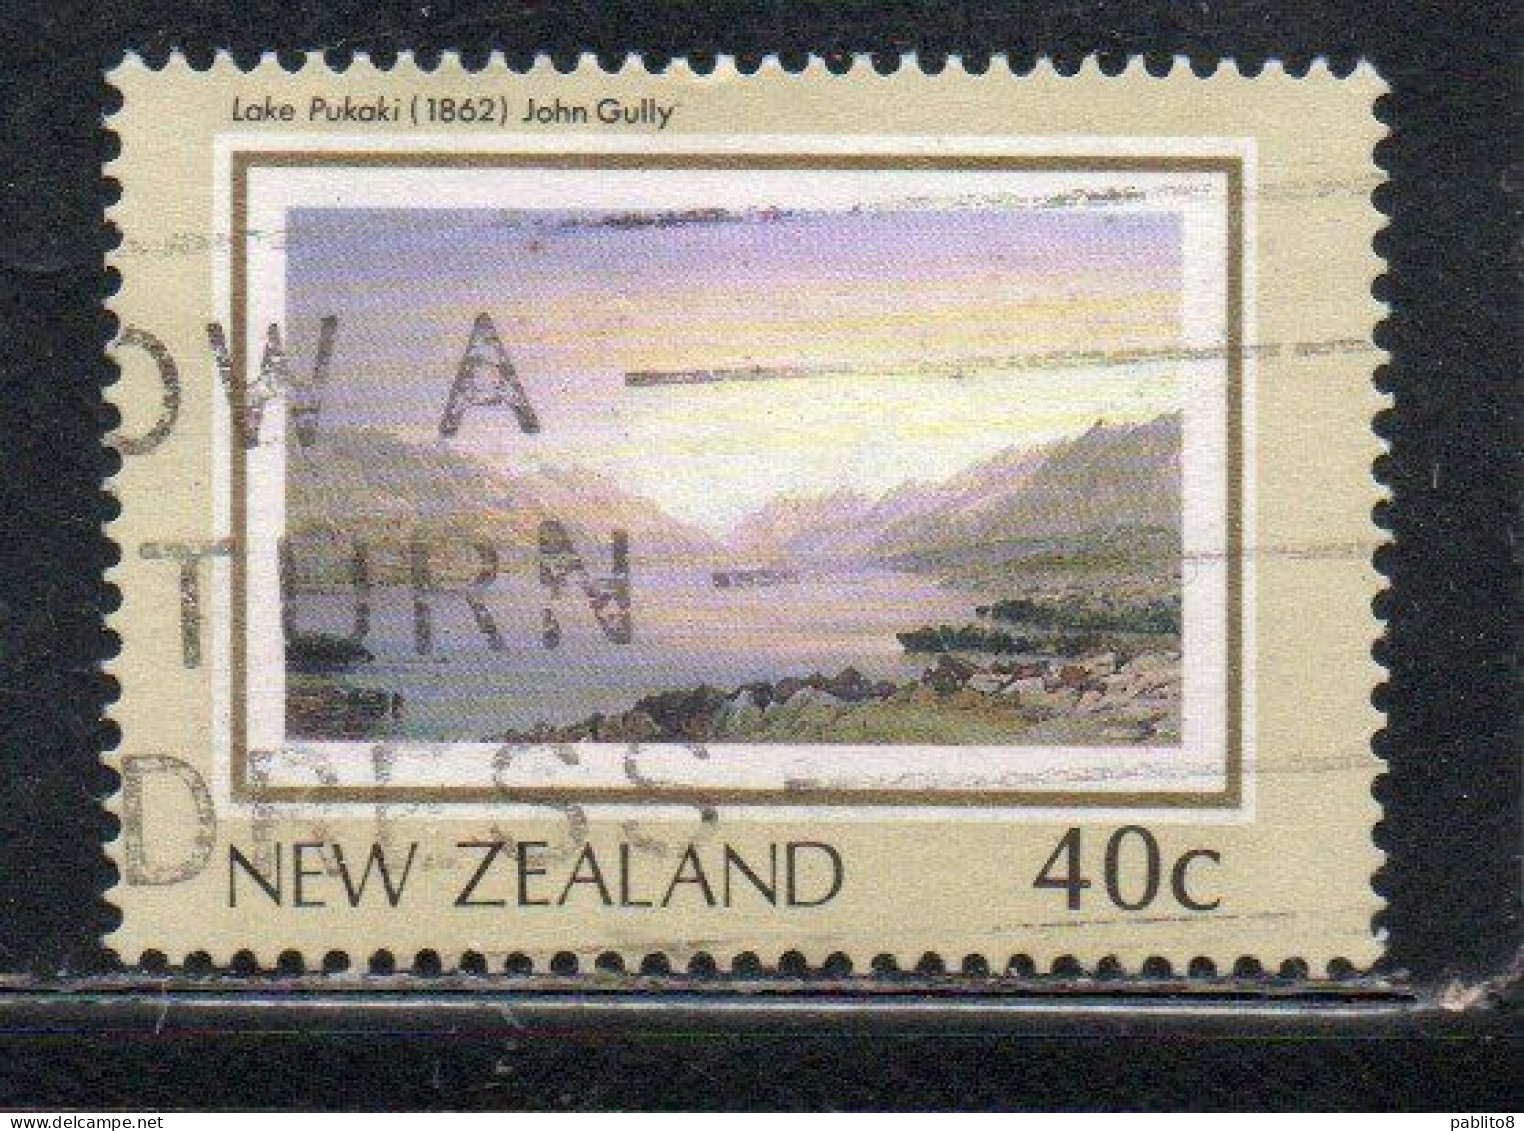 NEW ZEALAND NUOVA ZELANDA 1988 THE LAND PAINTINGS ARTISTS HERITAGE  PUKAKI LAKE 40c USED USATO OBLITERE' - Used Stamps